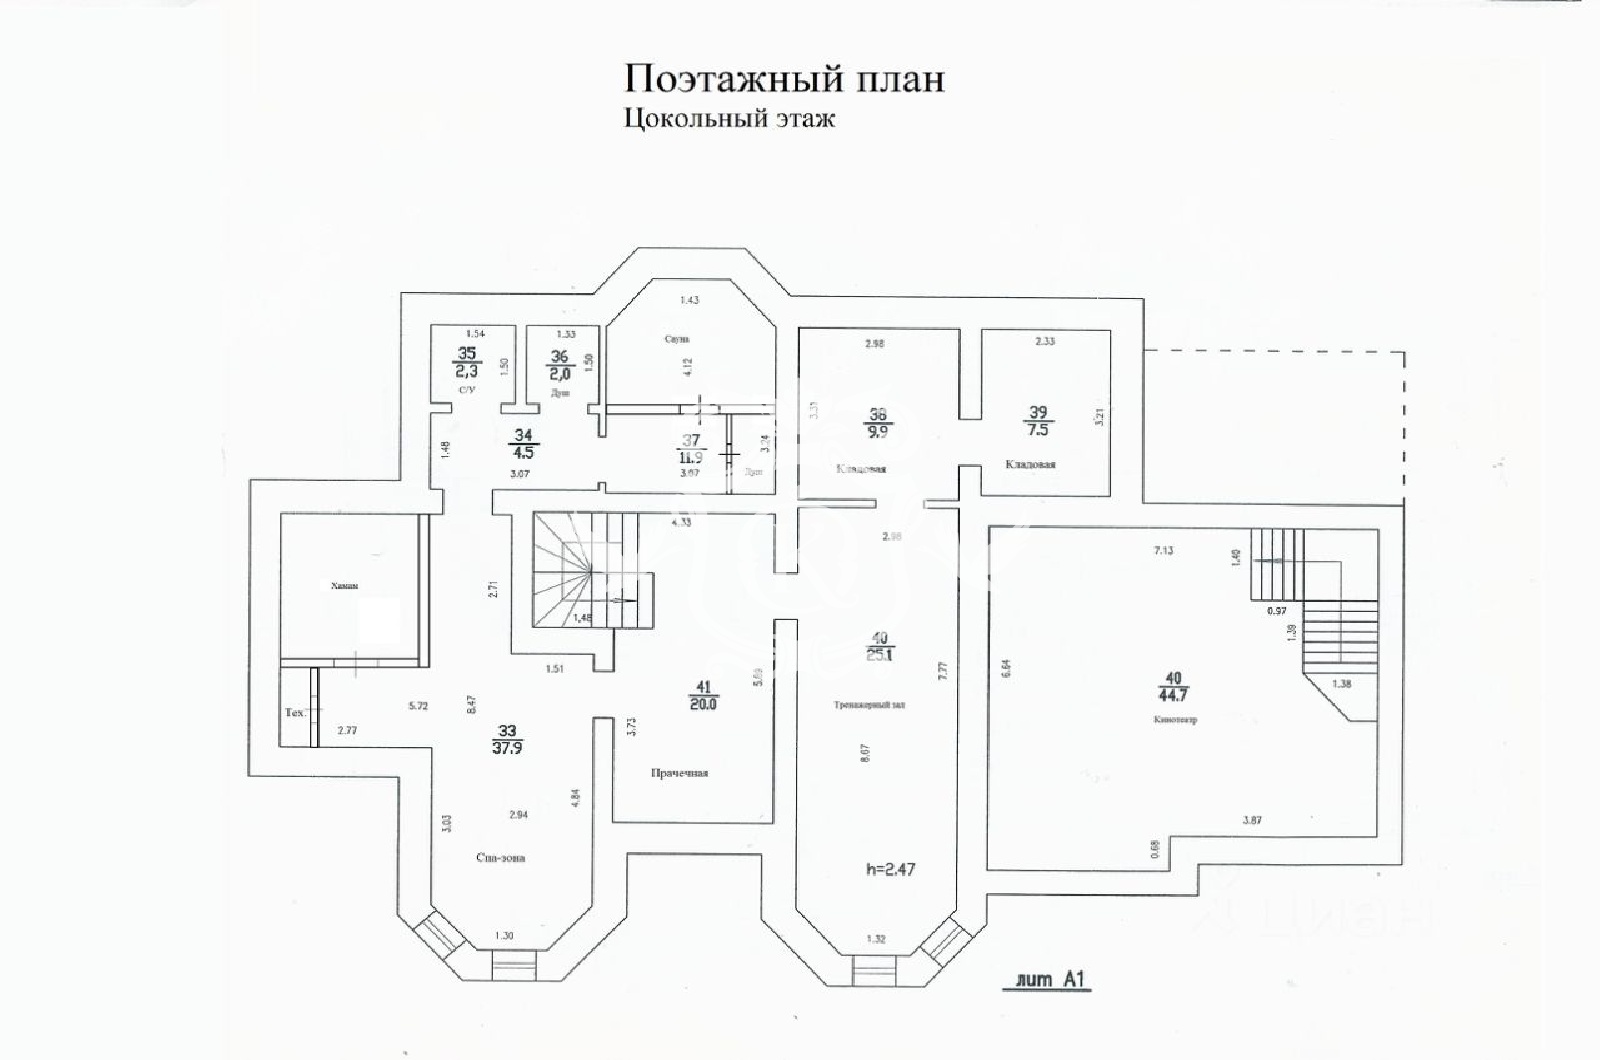 План помещения